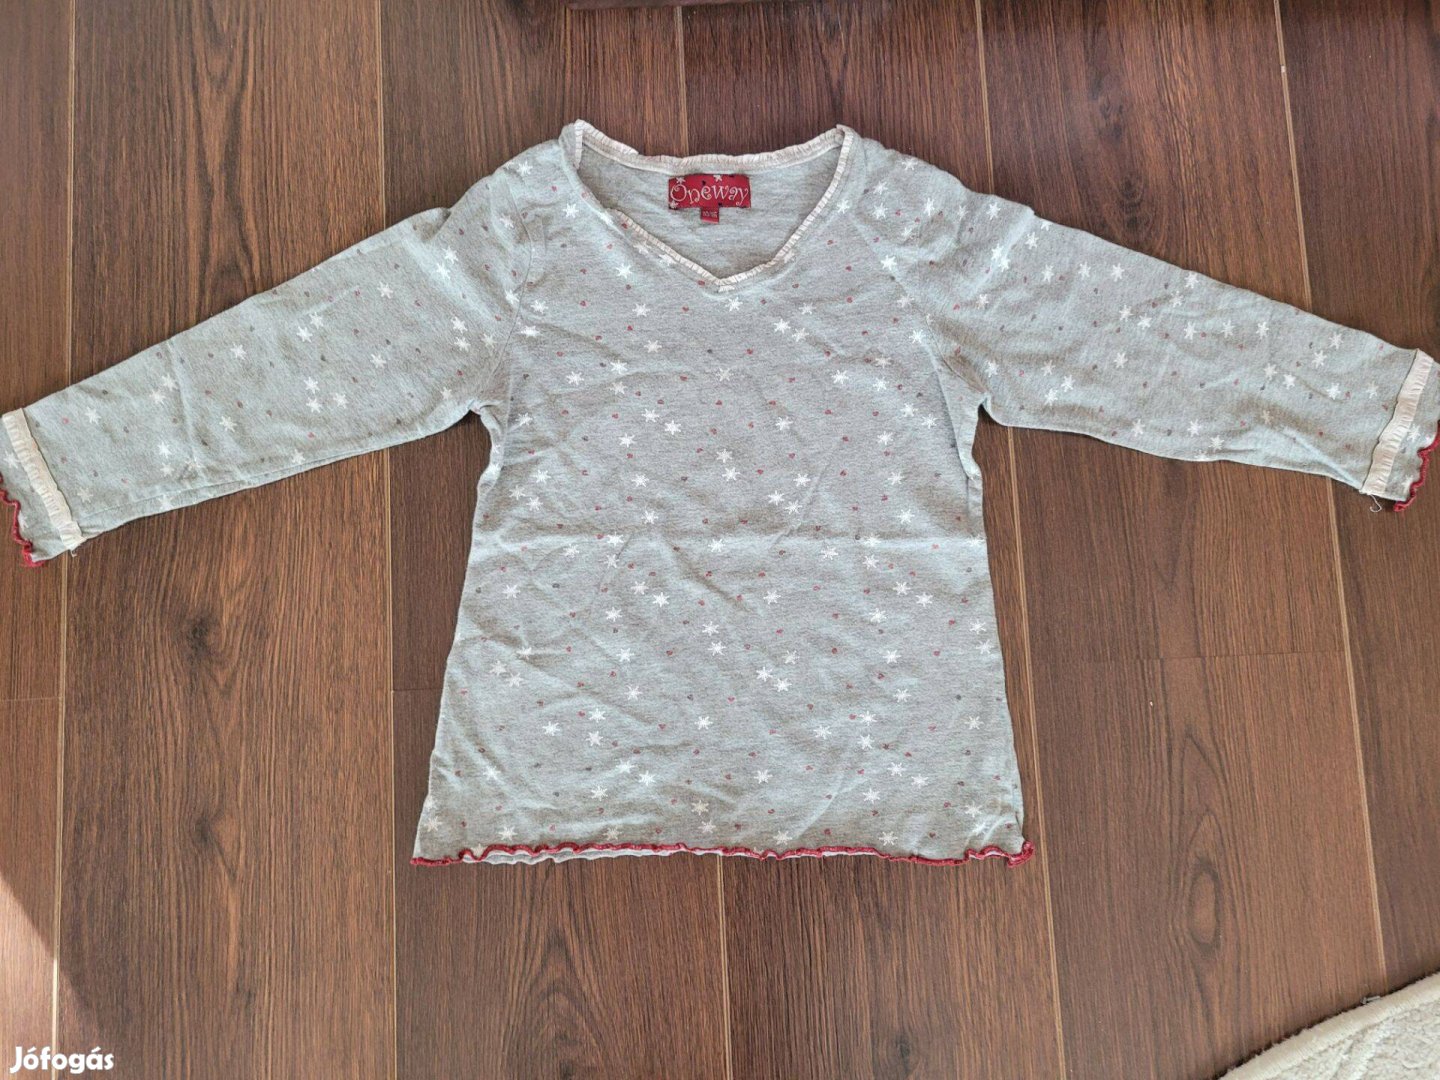 Kislány pizsama felső, One way márkájú 110/116-os méretben eladó!